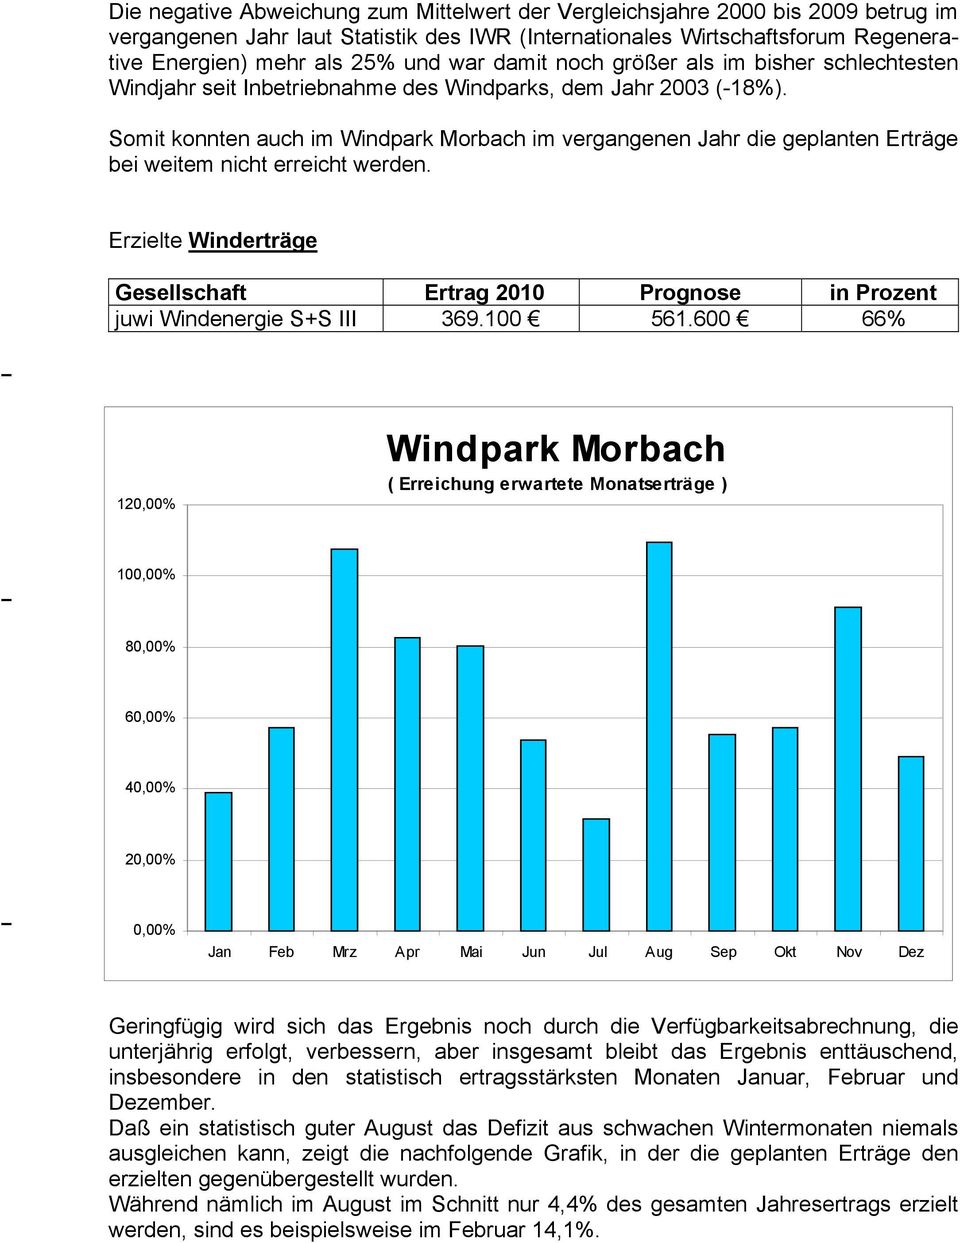 Somit konnten auch im Windpark Morbach im vergangenen Jahr die geplanten Erträge bei weitem nicht erreicht werden.